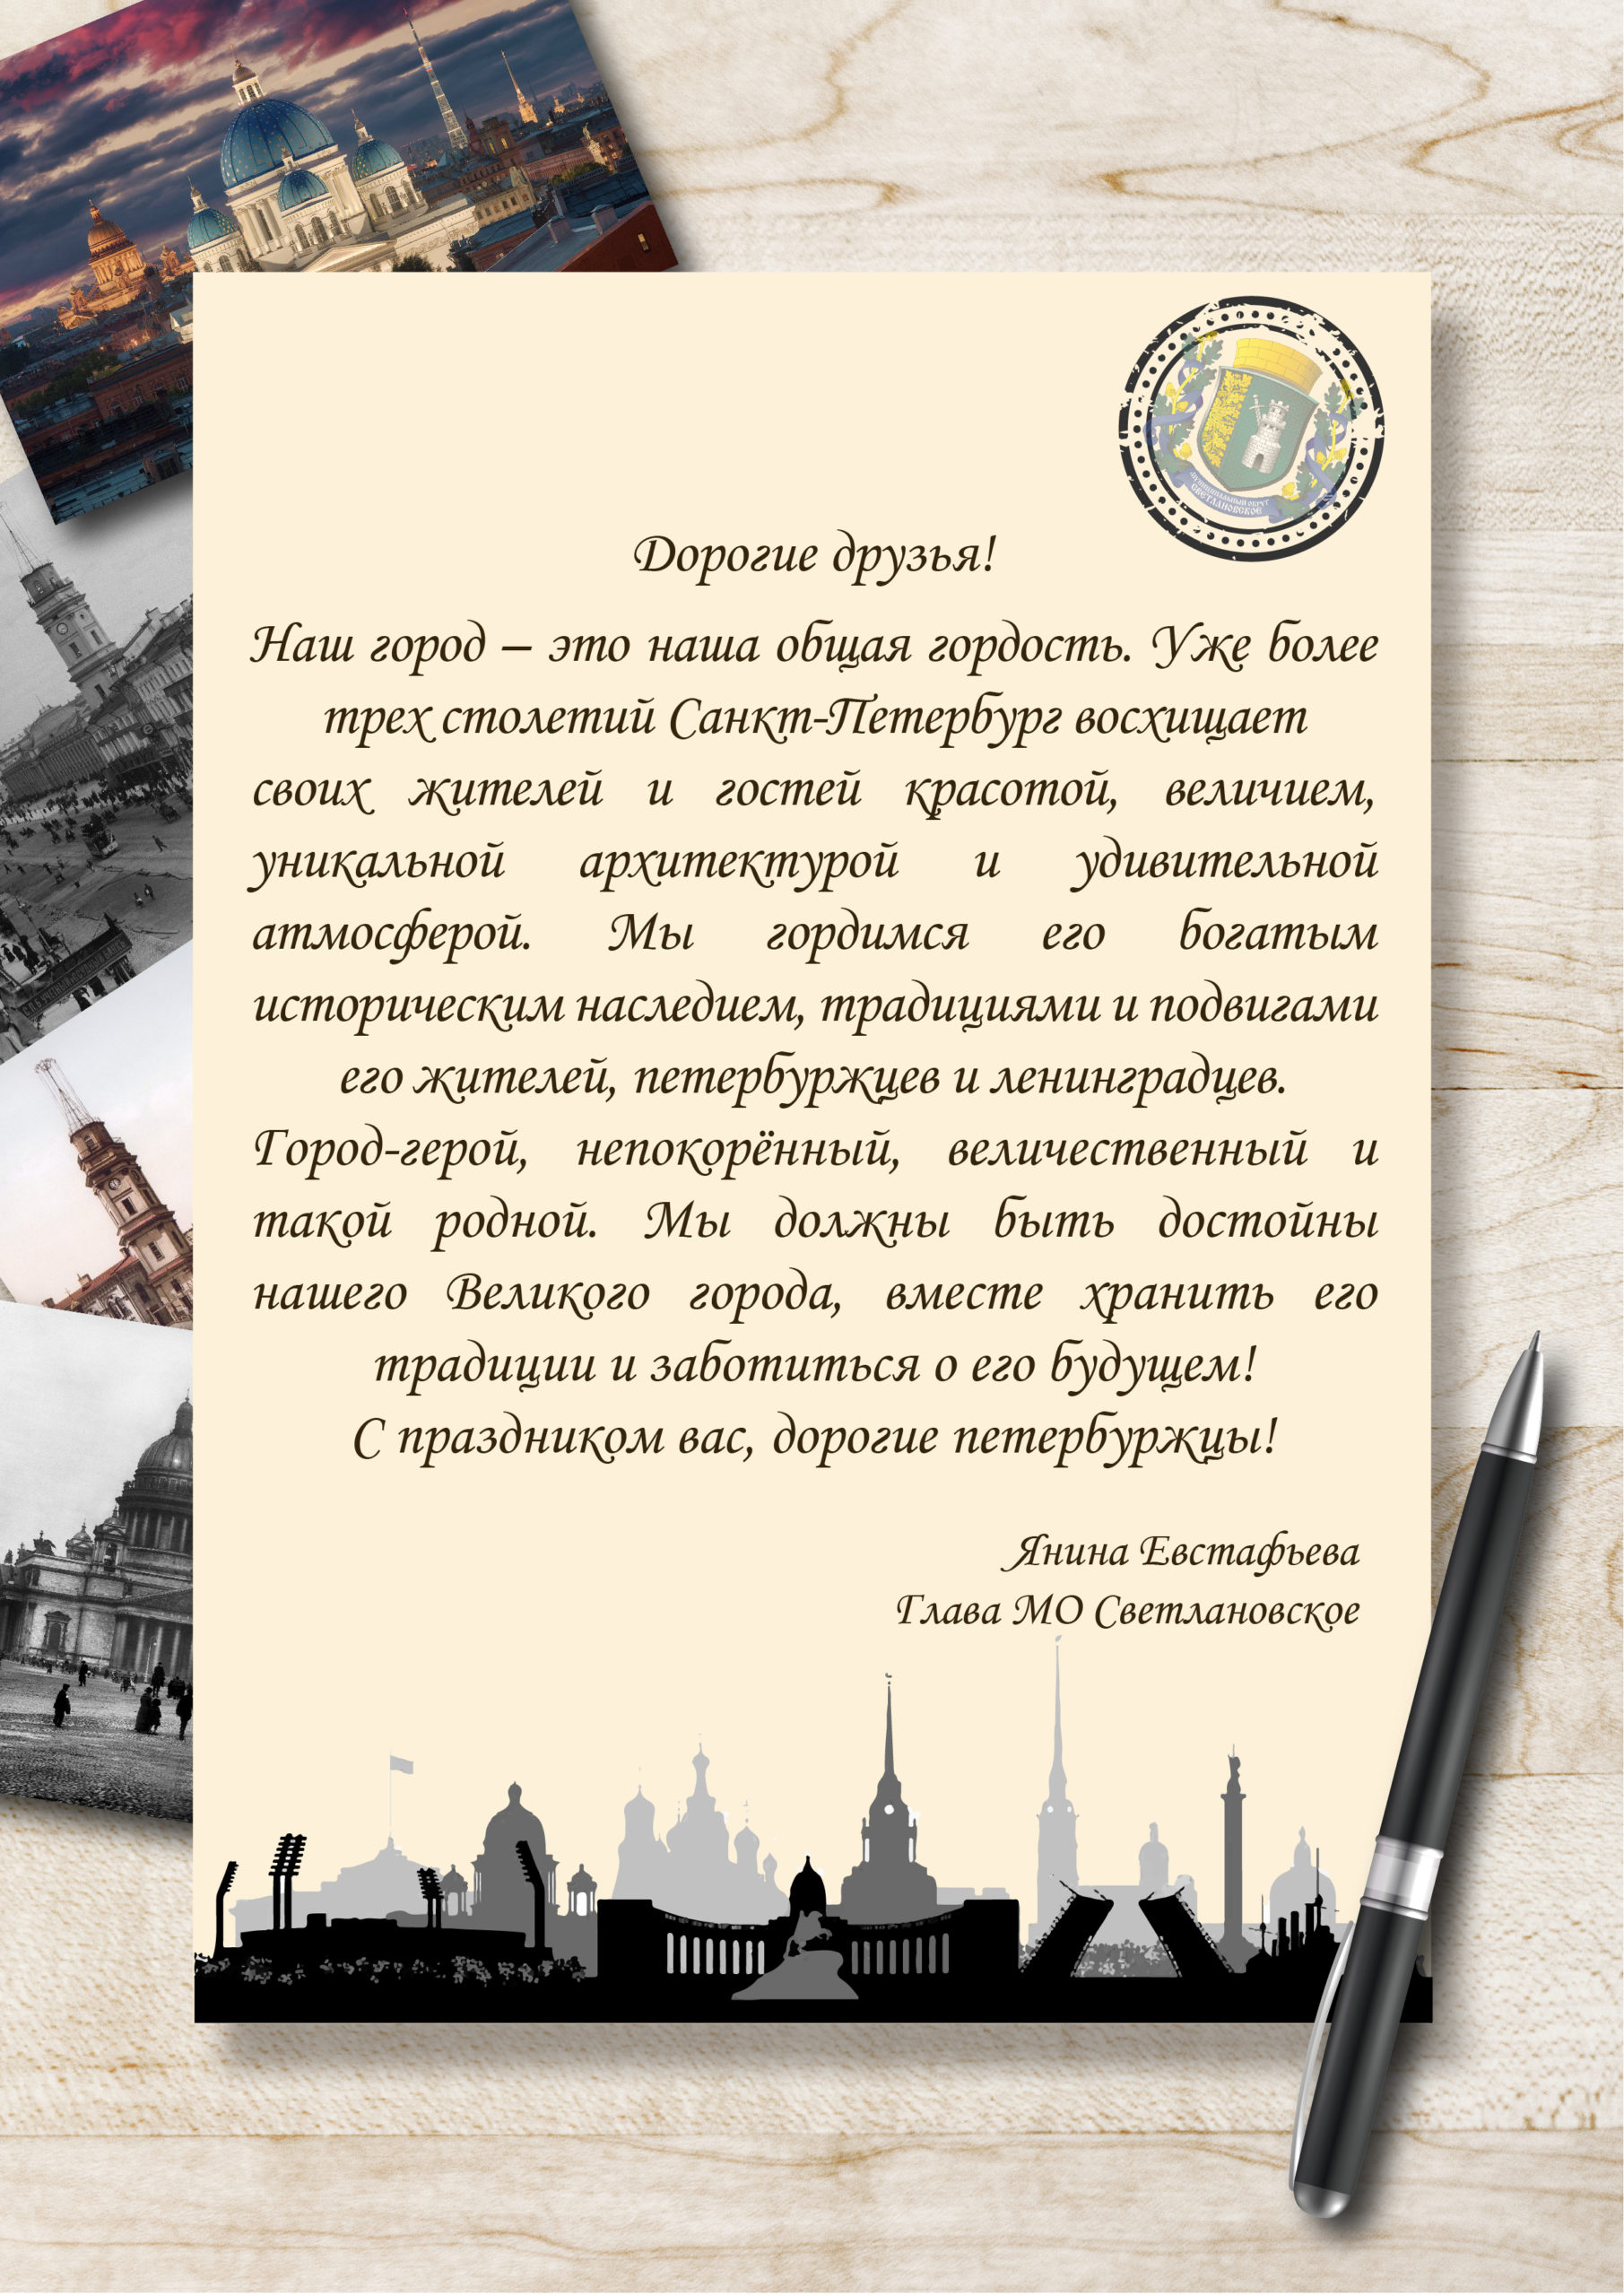 Дорогие друзья! Наш город - это наша общая гордость. Уже более трех столетий Санкт-Петербург восхищает своих жителей и гостей красотой, величием, уникальной архитектурой и удивительной атмосферой. С праздников вас, дорогие петербуржцы! Янина Евстафьева, Глава МО Светлановское.